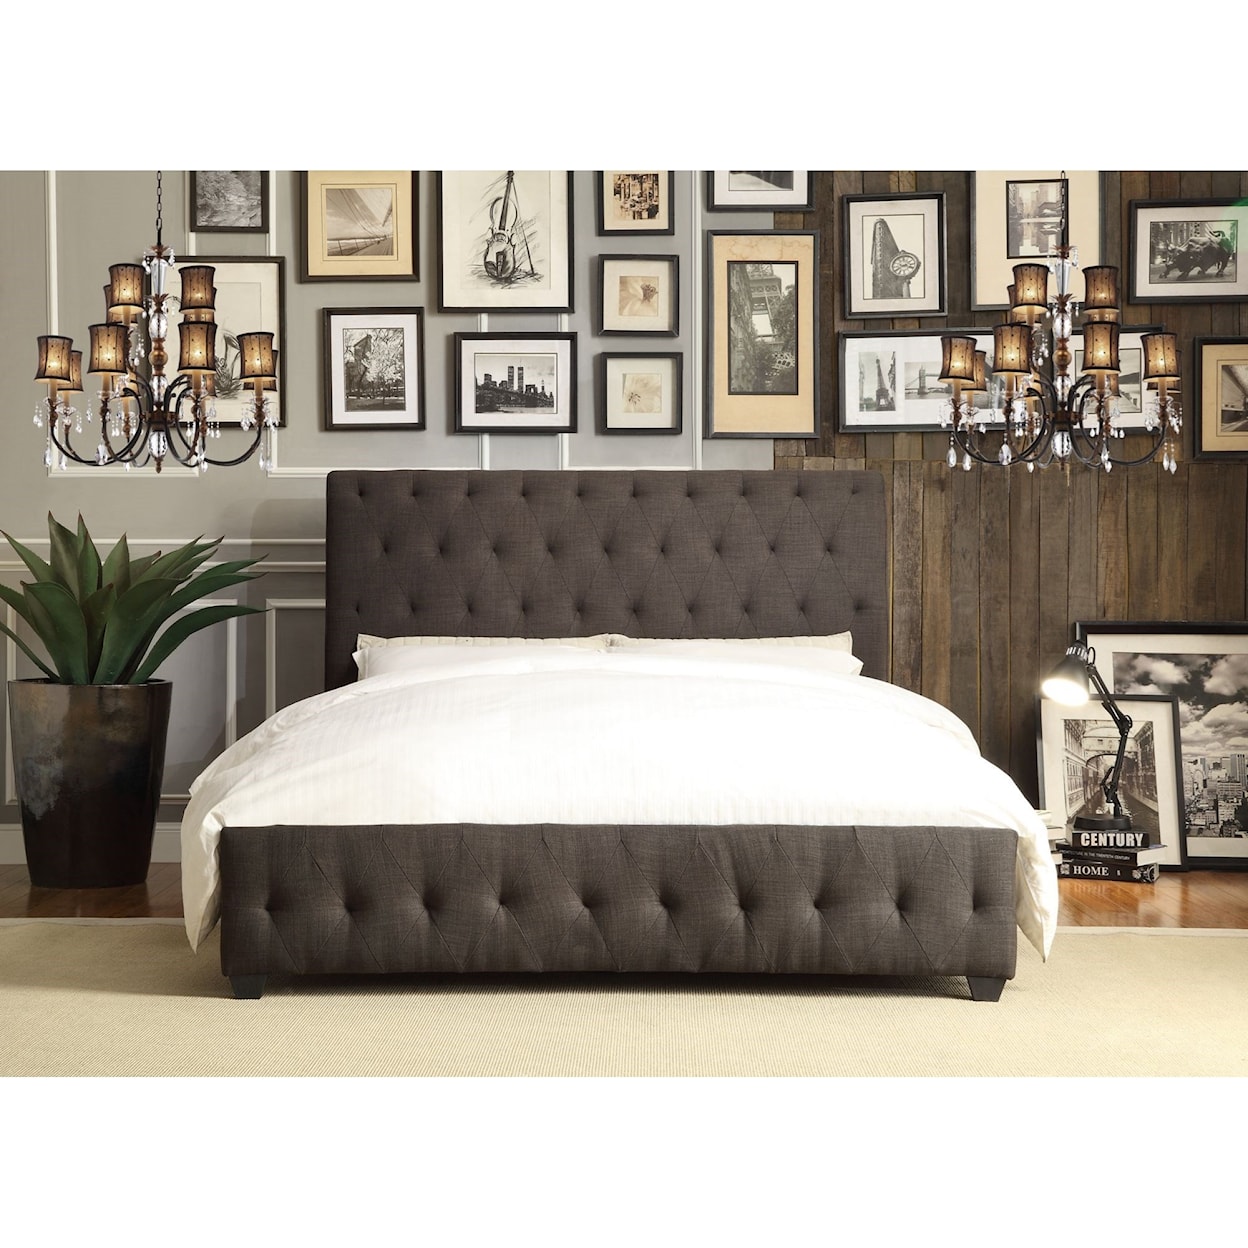 Homelegance Baldwyn Contemporary Full Upholstered Sleigh Bed